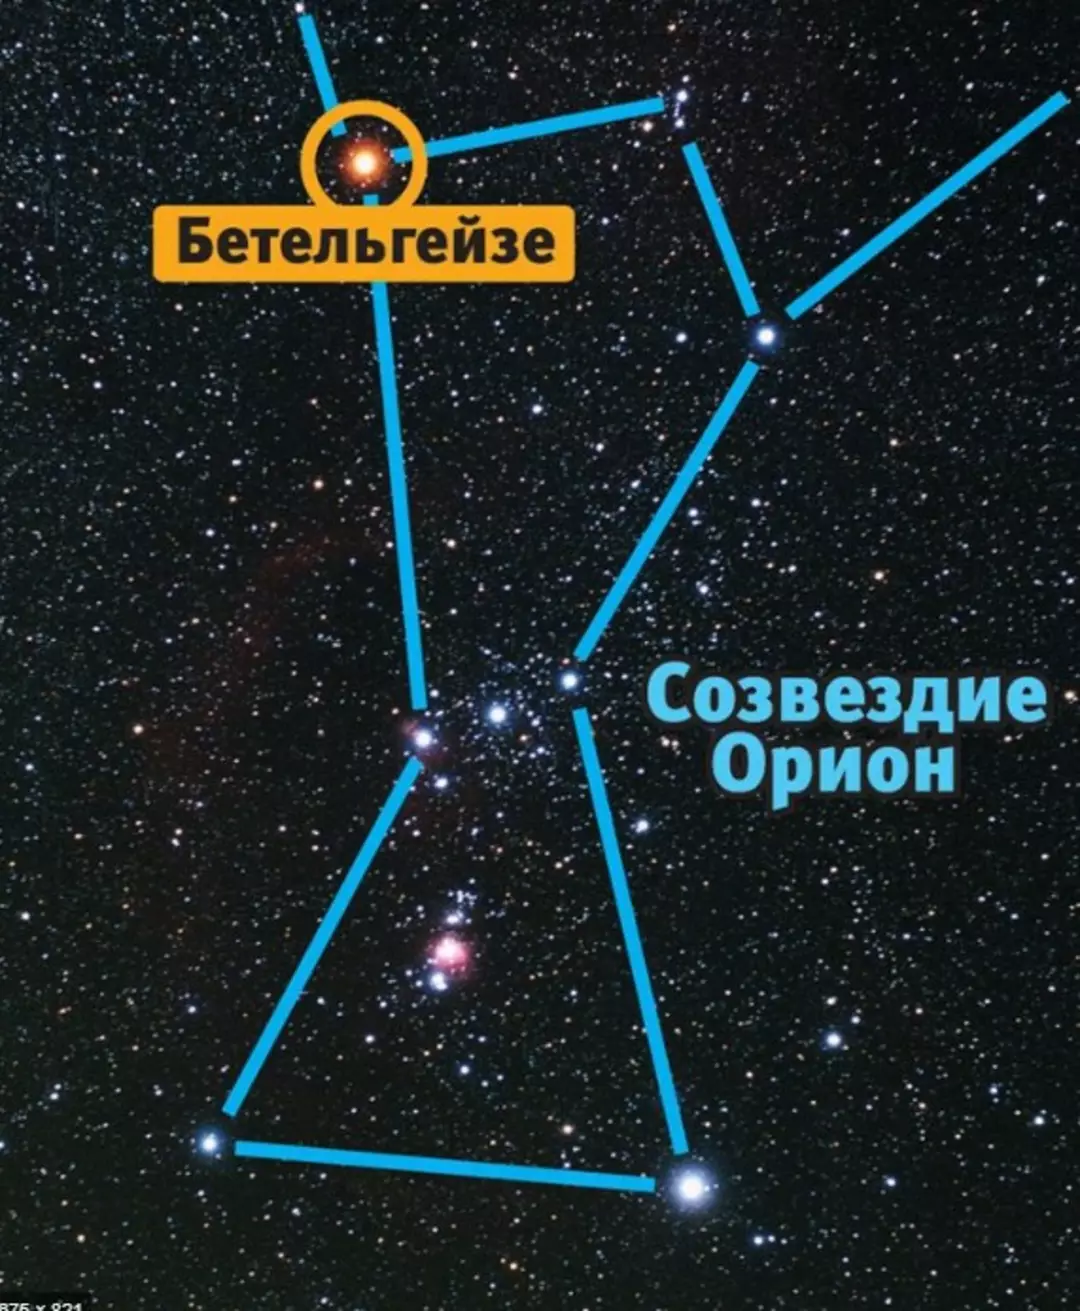 Орион ригель. Звезда Бетельгейзе в созвездии Ориона. Созвездие Орион Бетельгейзе ригель. Бетельгейзе ригель Беллатрикс в созвездии Ориона. Самая яркая звезда в созвездии Орион.